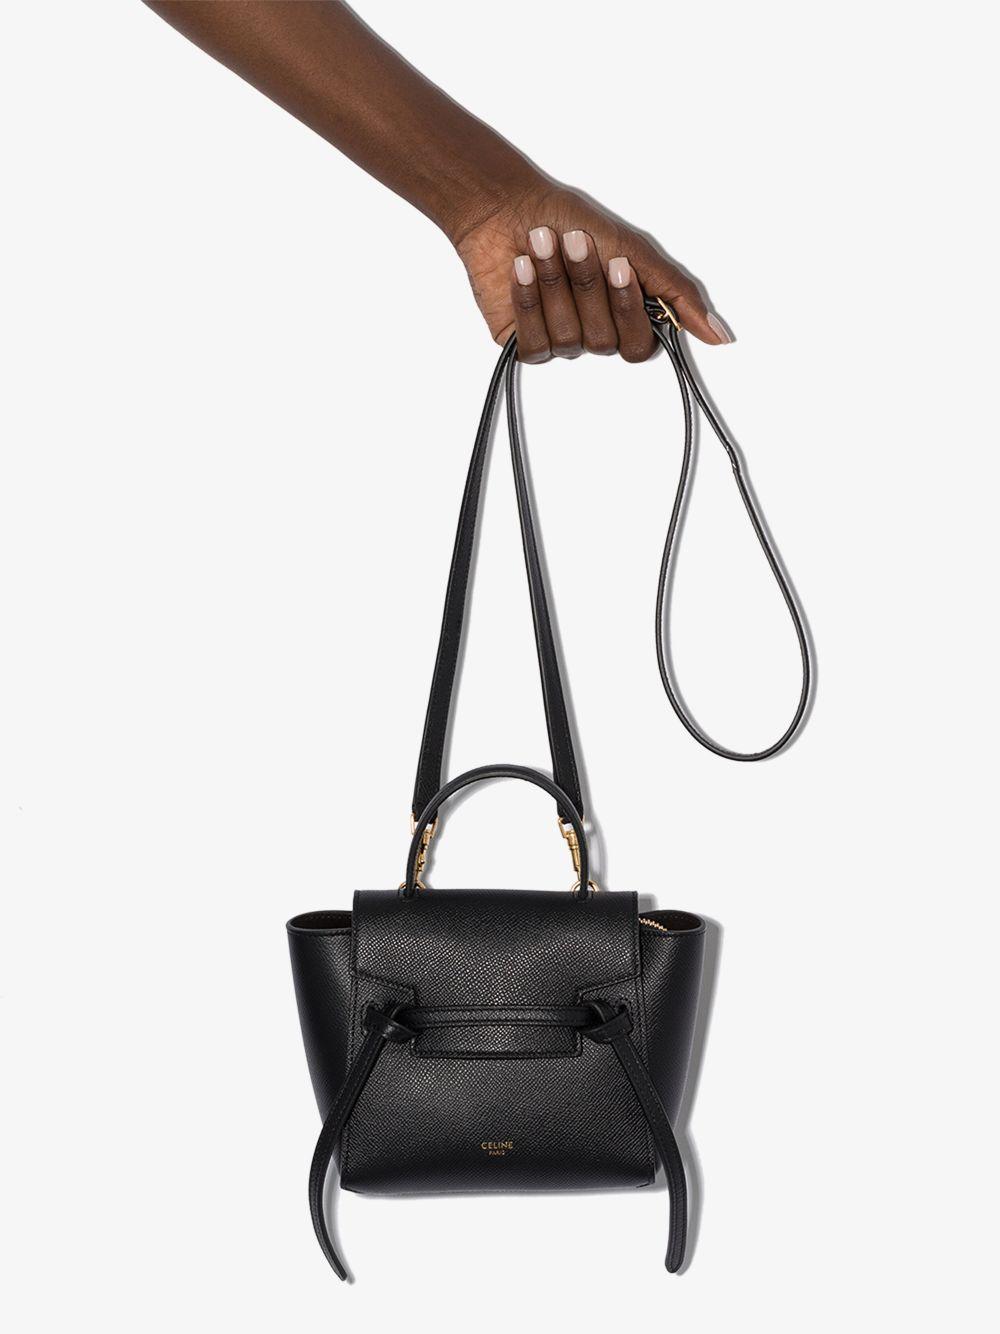 Celine Pico Belt bag, Women's Fashion, Bags & Wallets, Cross-body